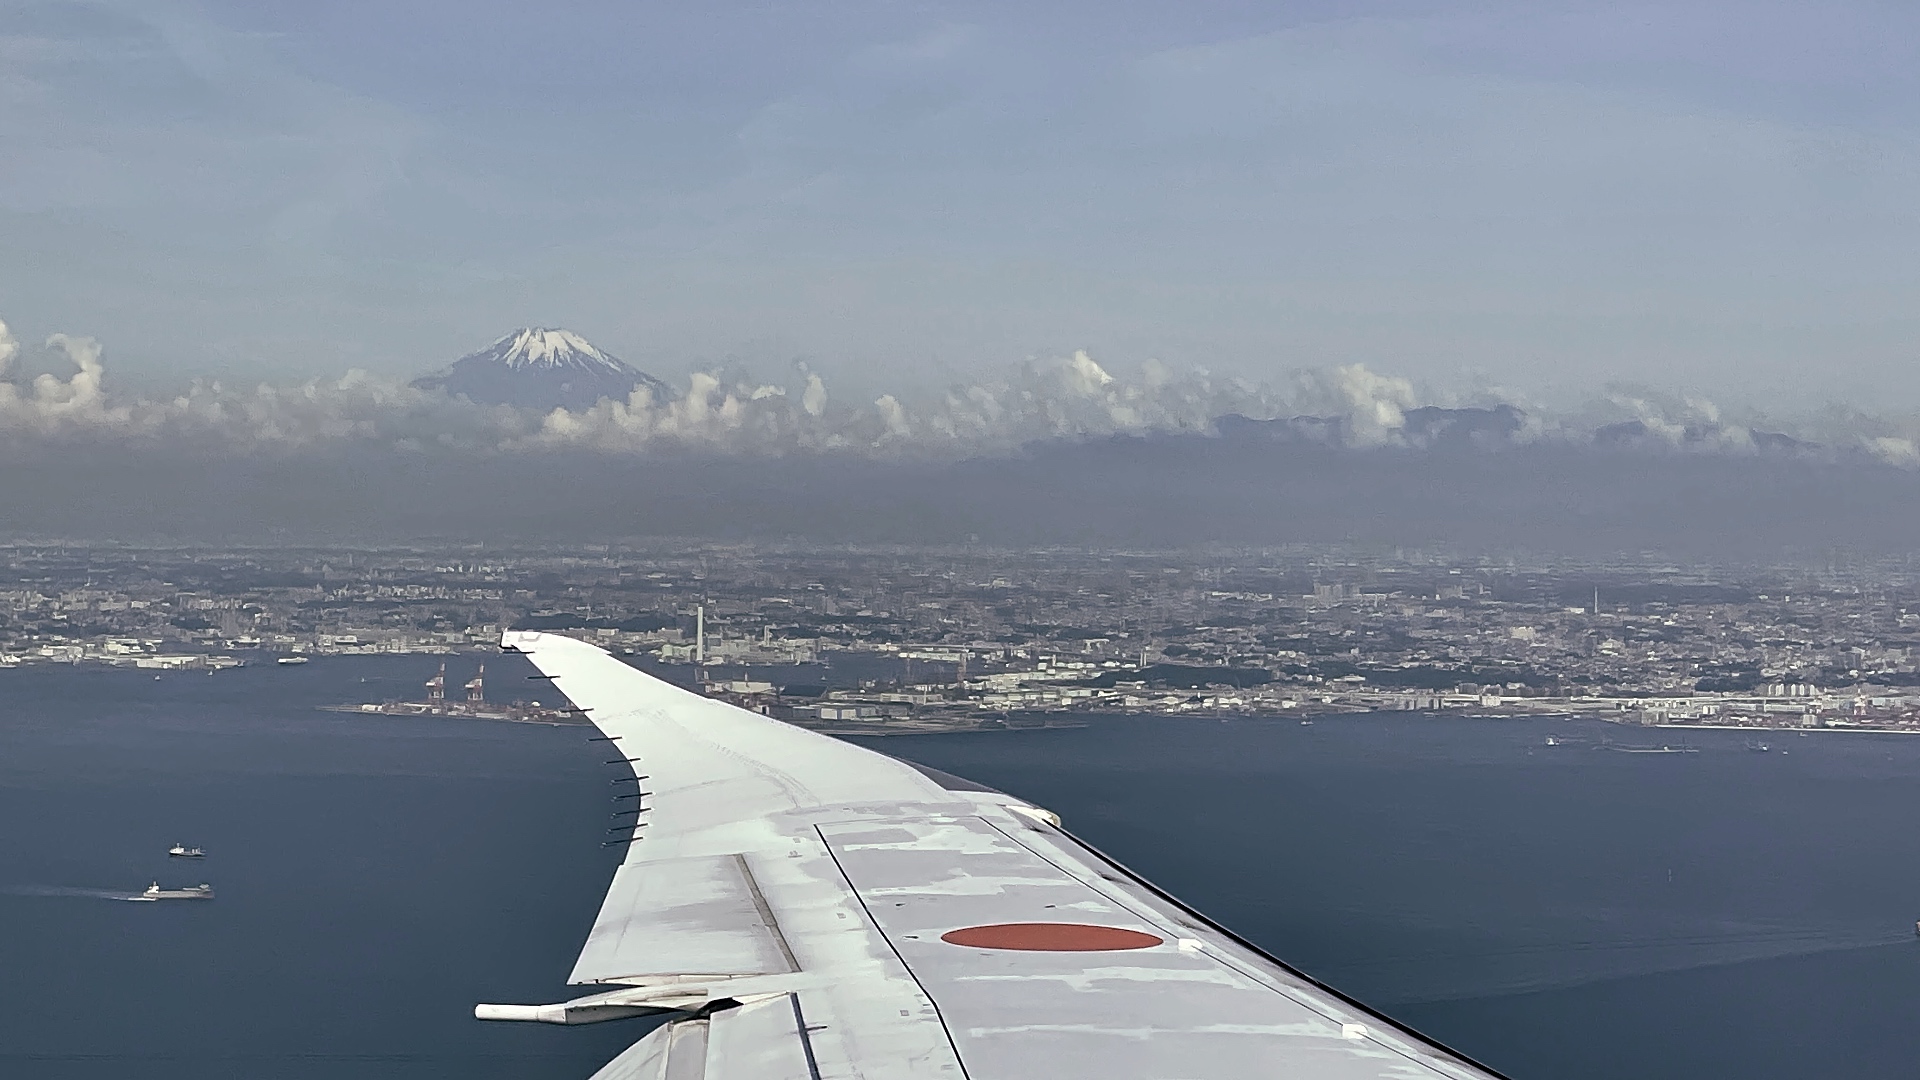 Anflug auf den Flughafen Haneda mit dem Fuji im Hintergrund.